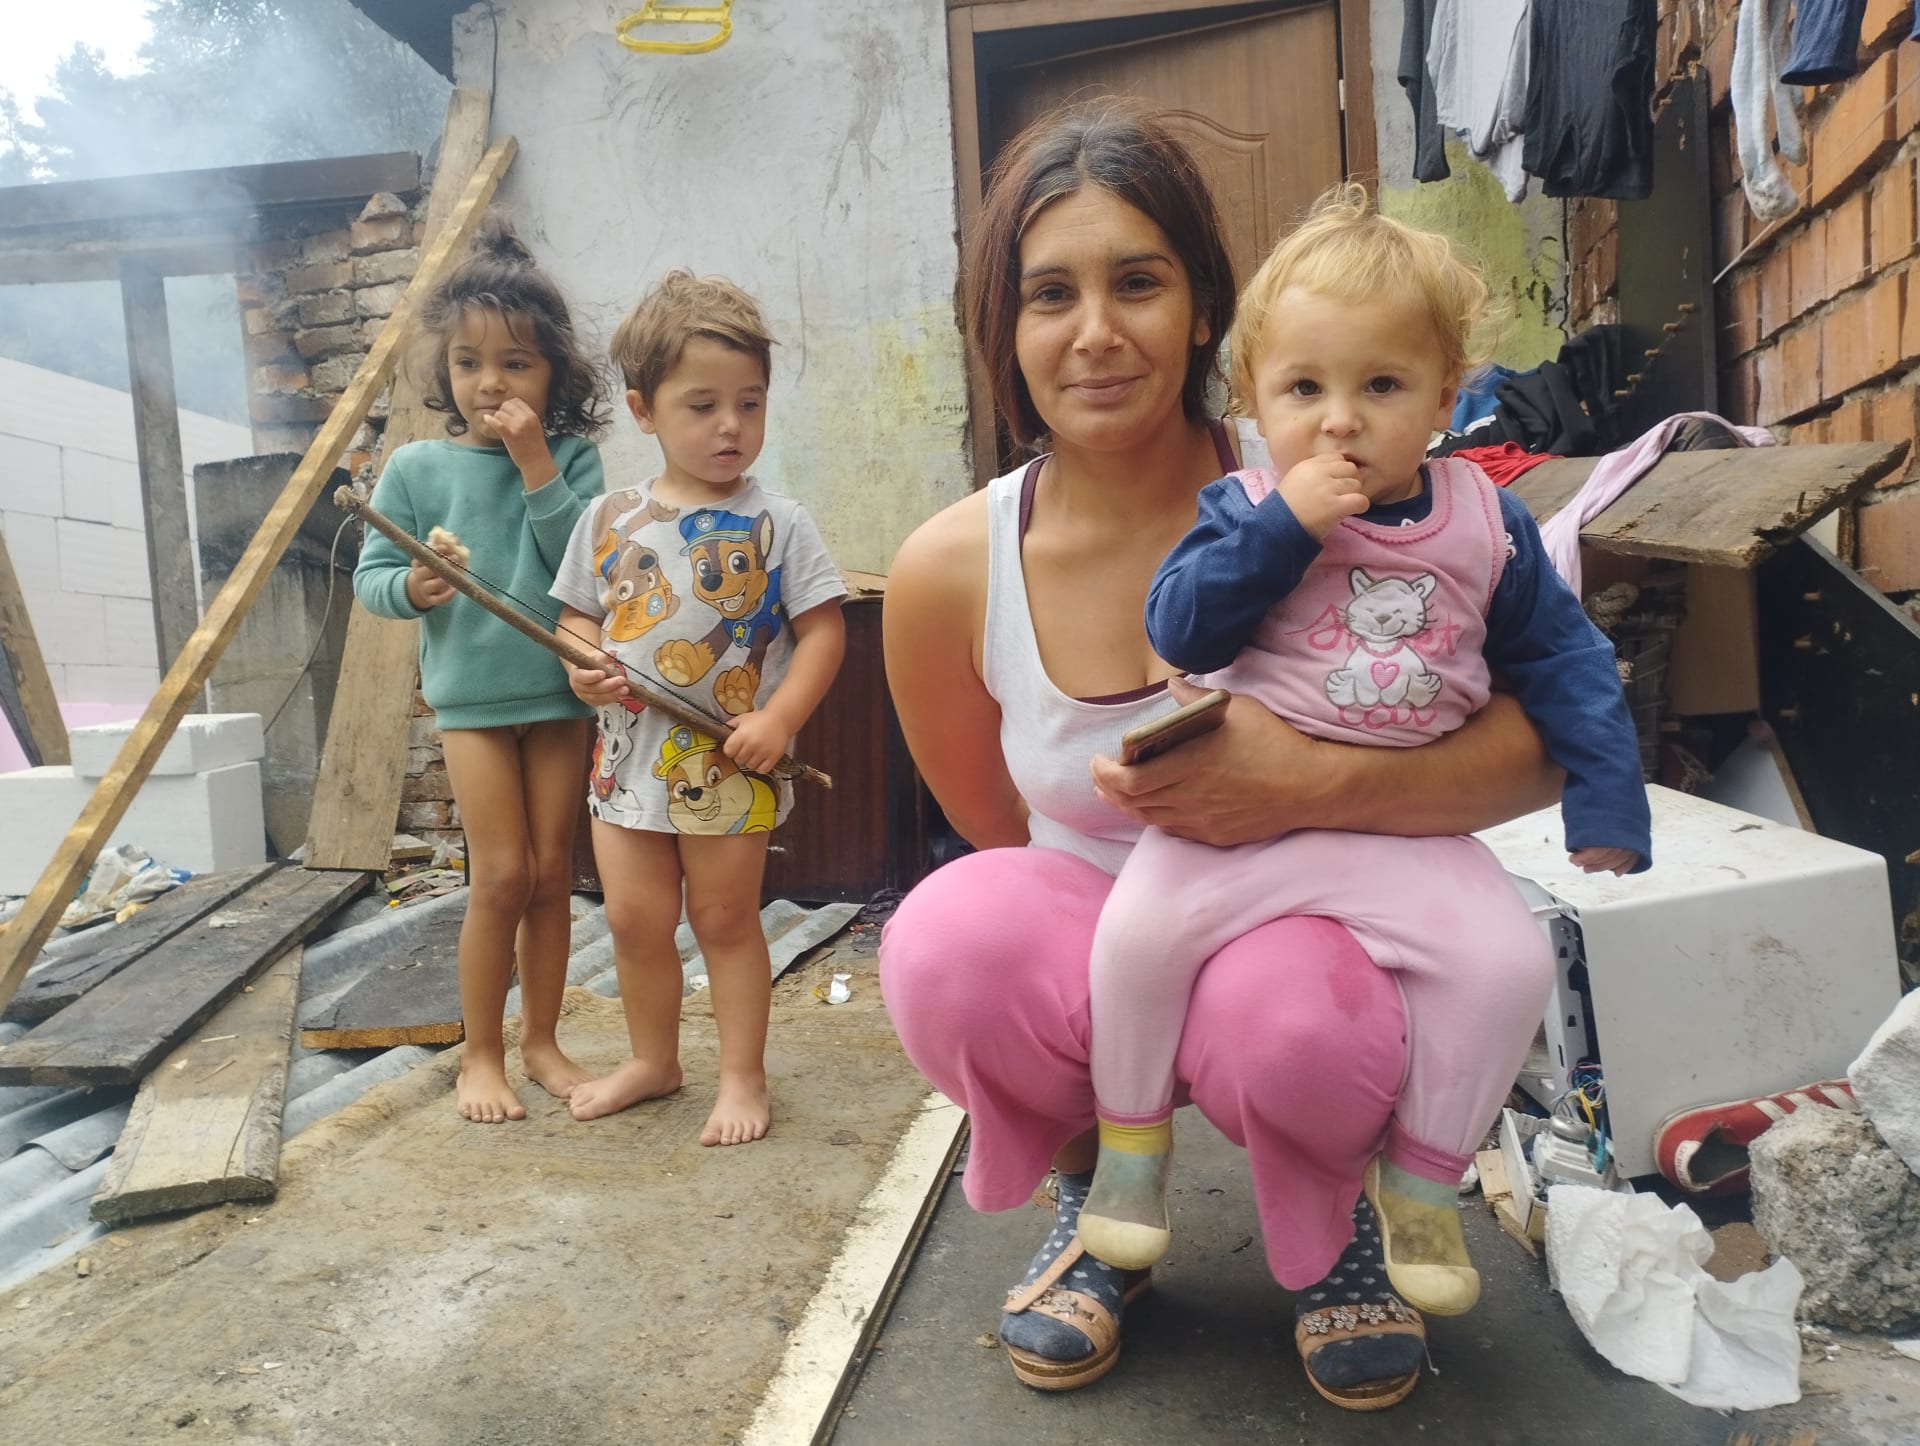 V romské osadě v obci Nesluša, 30 km od českých hranic, žije přes 100 Romů. Velká většina z nich k volbám nešla. Na snímku Dana Rácová s rodinou, celkem vychovává 8 dětí.